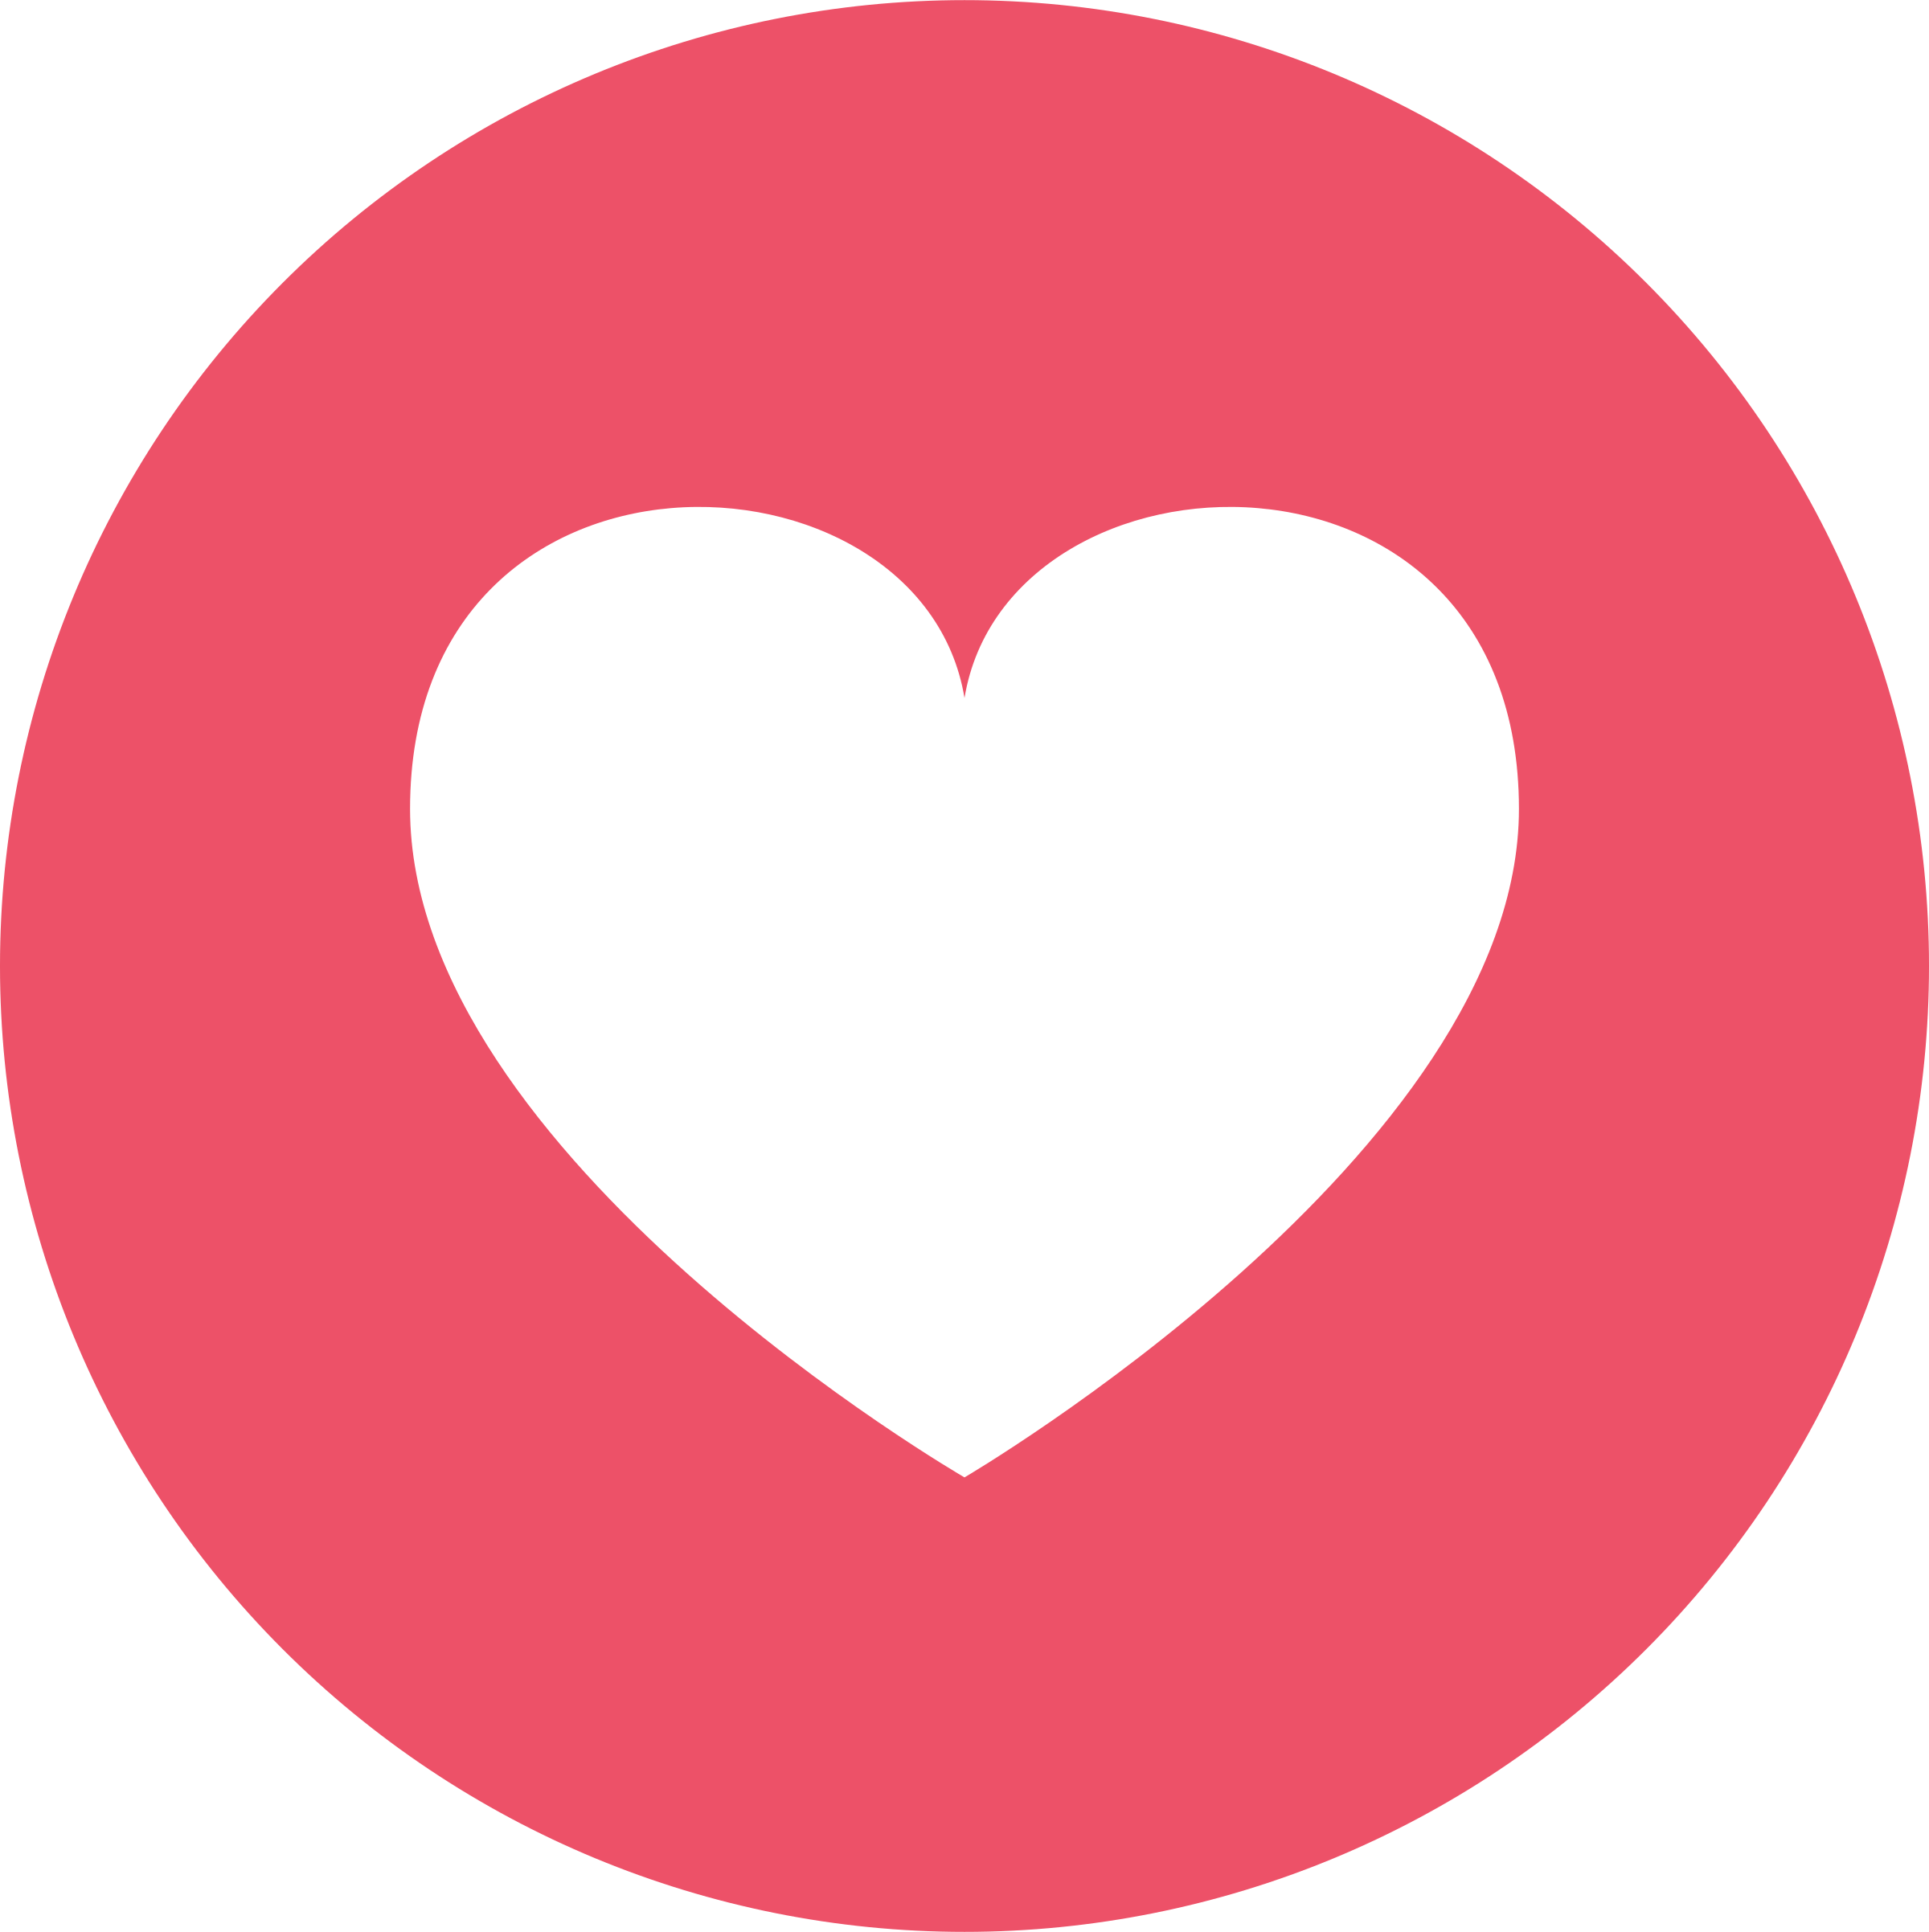 Love Logo - Facebook Love Logo PNG Transparent & SVG Vector - Freebie Supply